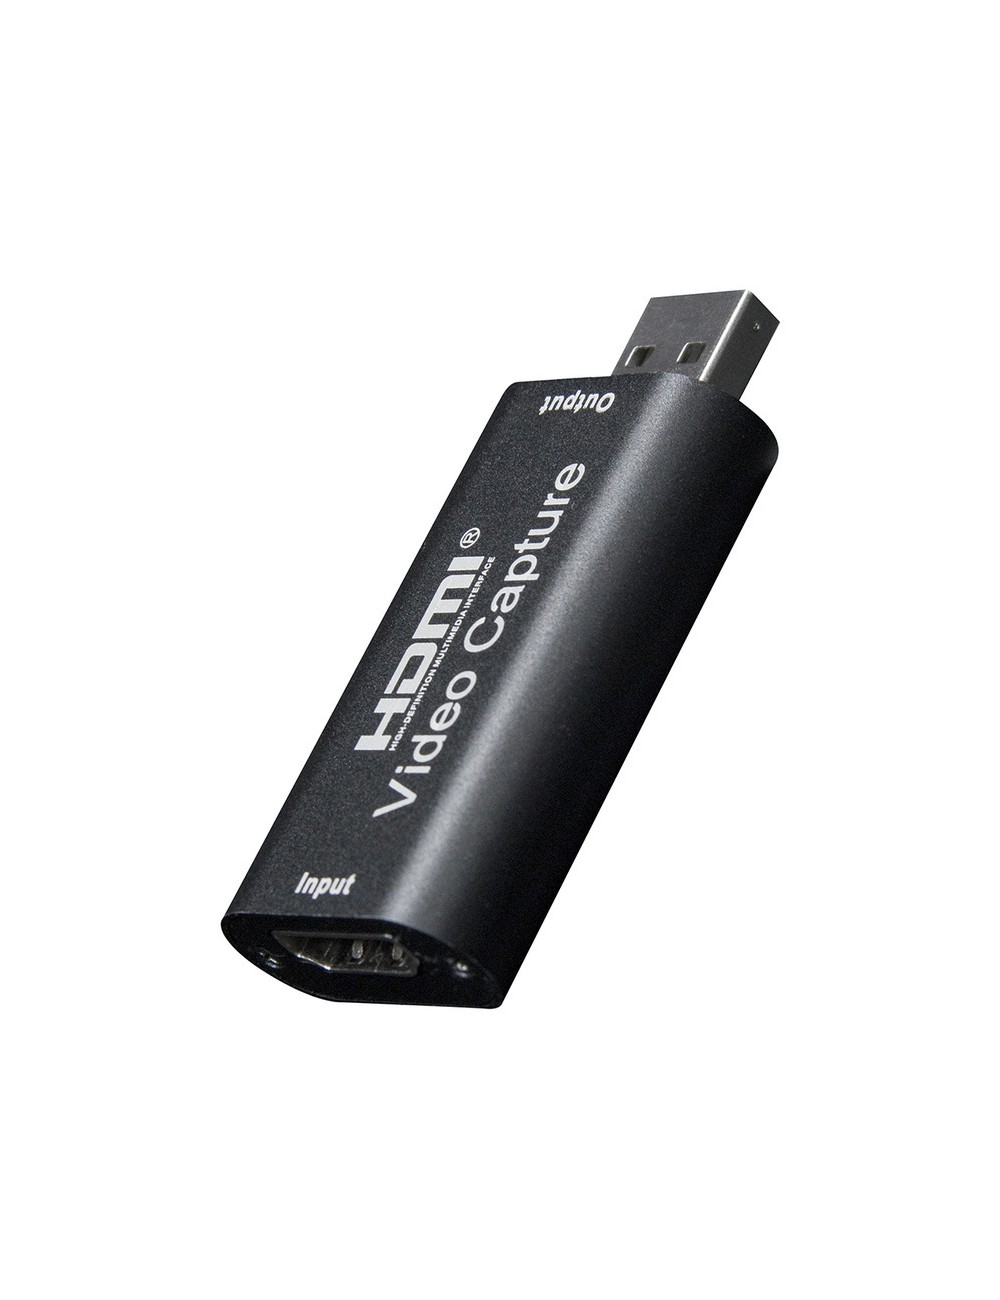 Grabber Video karta do przechwytywania obrazu konwerter HDMI-USB